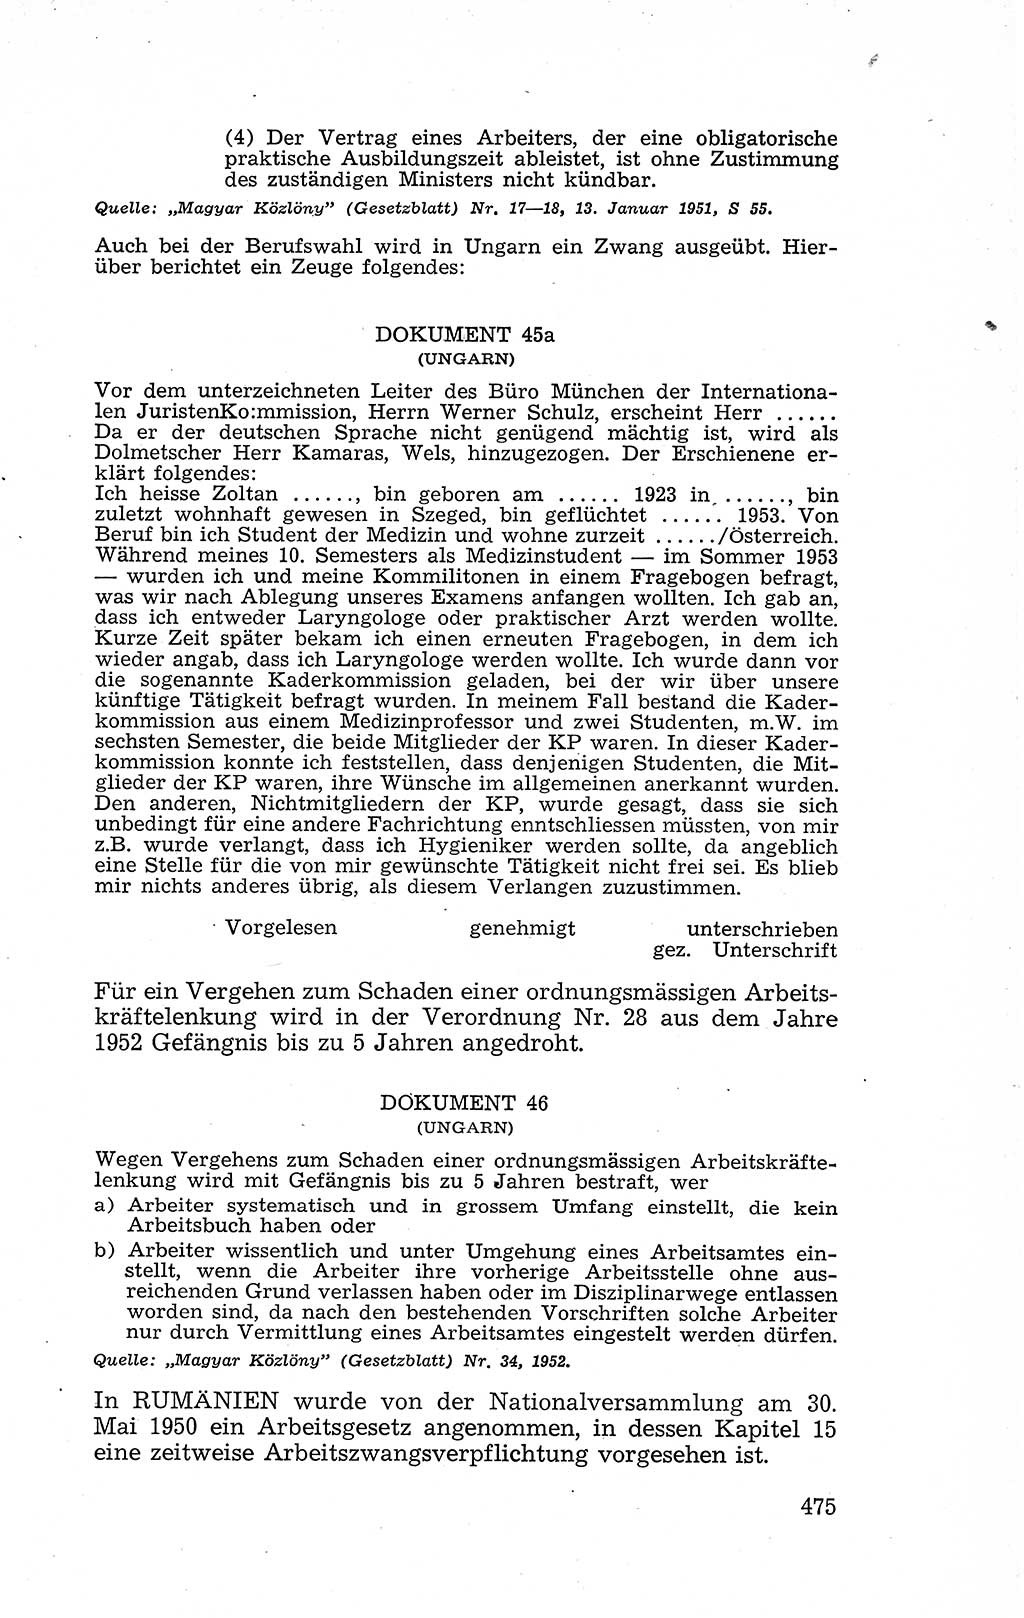 Recht in Fesseln, Dokumente, Internationale Juristen-Kommission [Bundesrepublik Deutschland (BRD)] 1955, Seite 475 (R. Dok. IJK BRD 1955, S. 475)